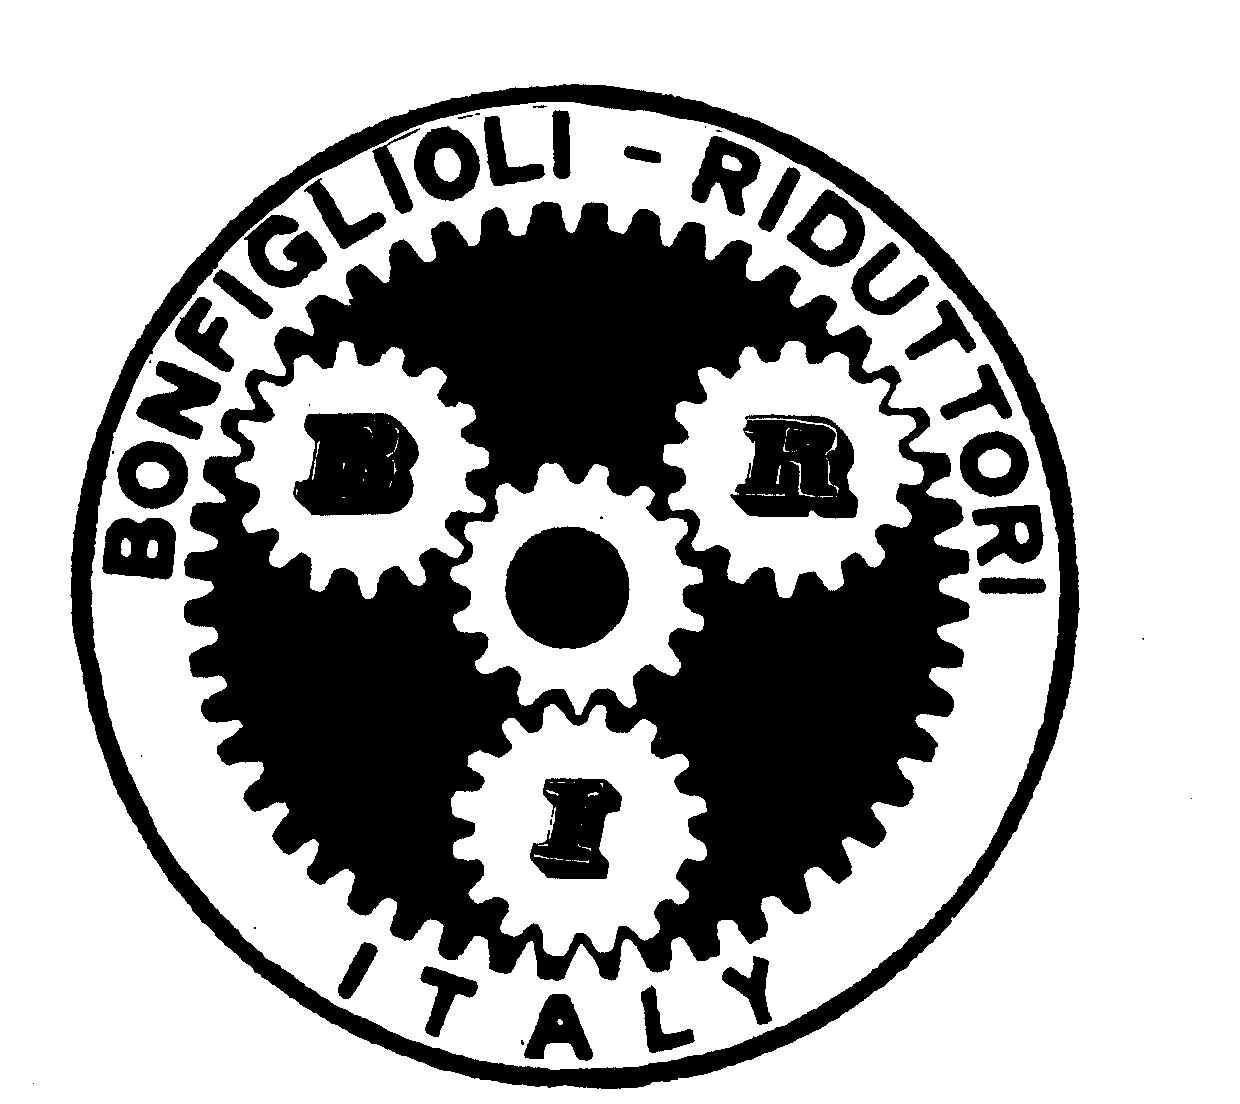  BRI BONFIGLIOLI - RIDUTTORI ITALY